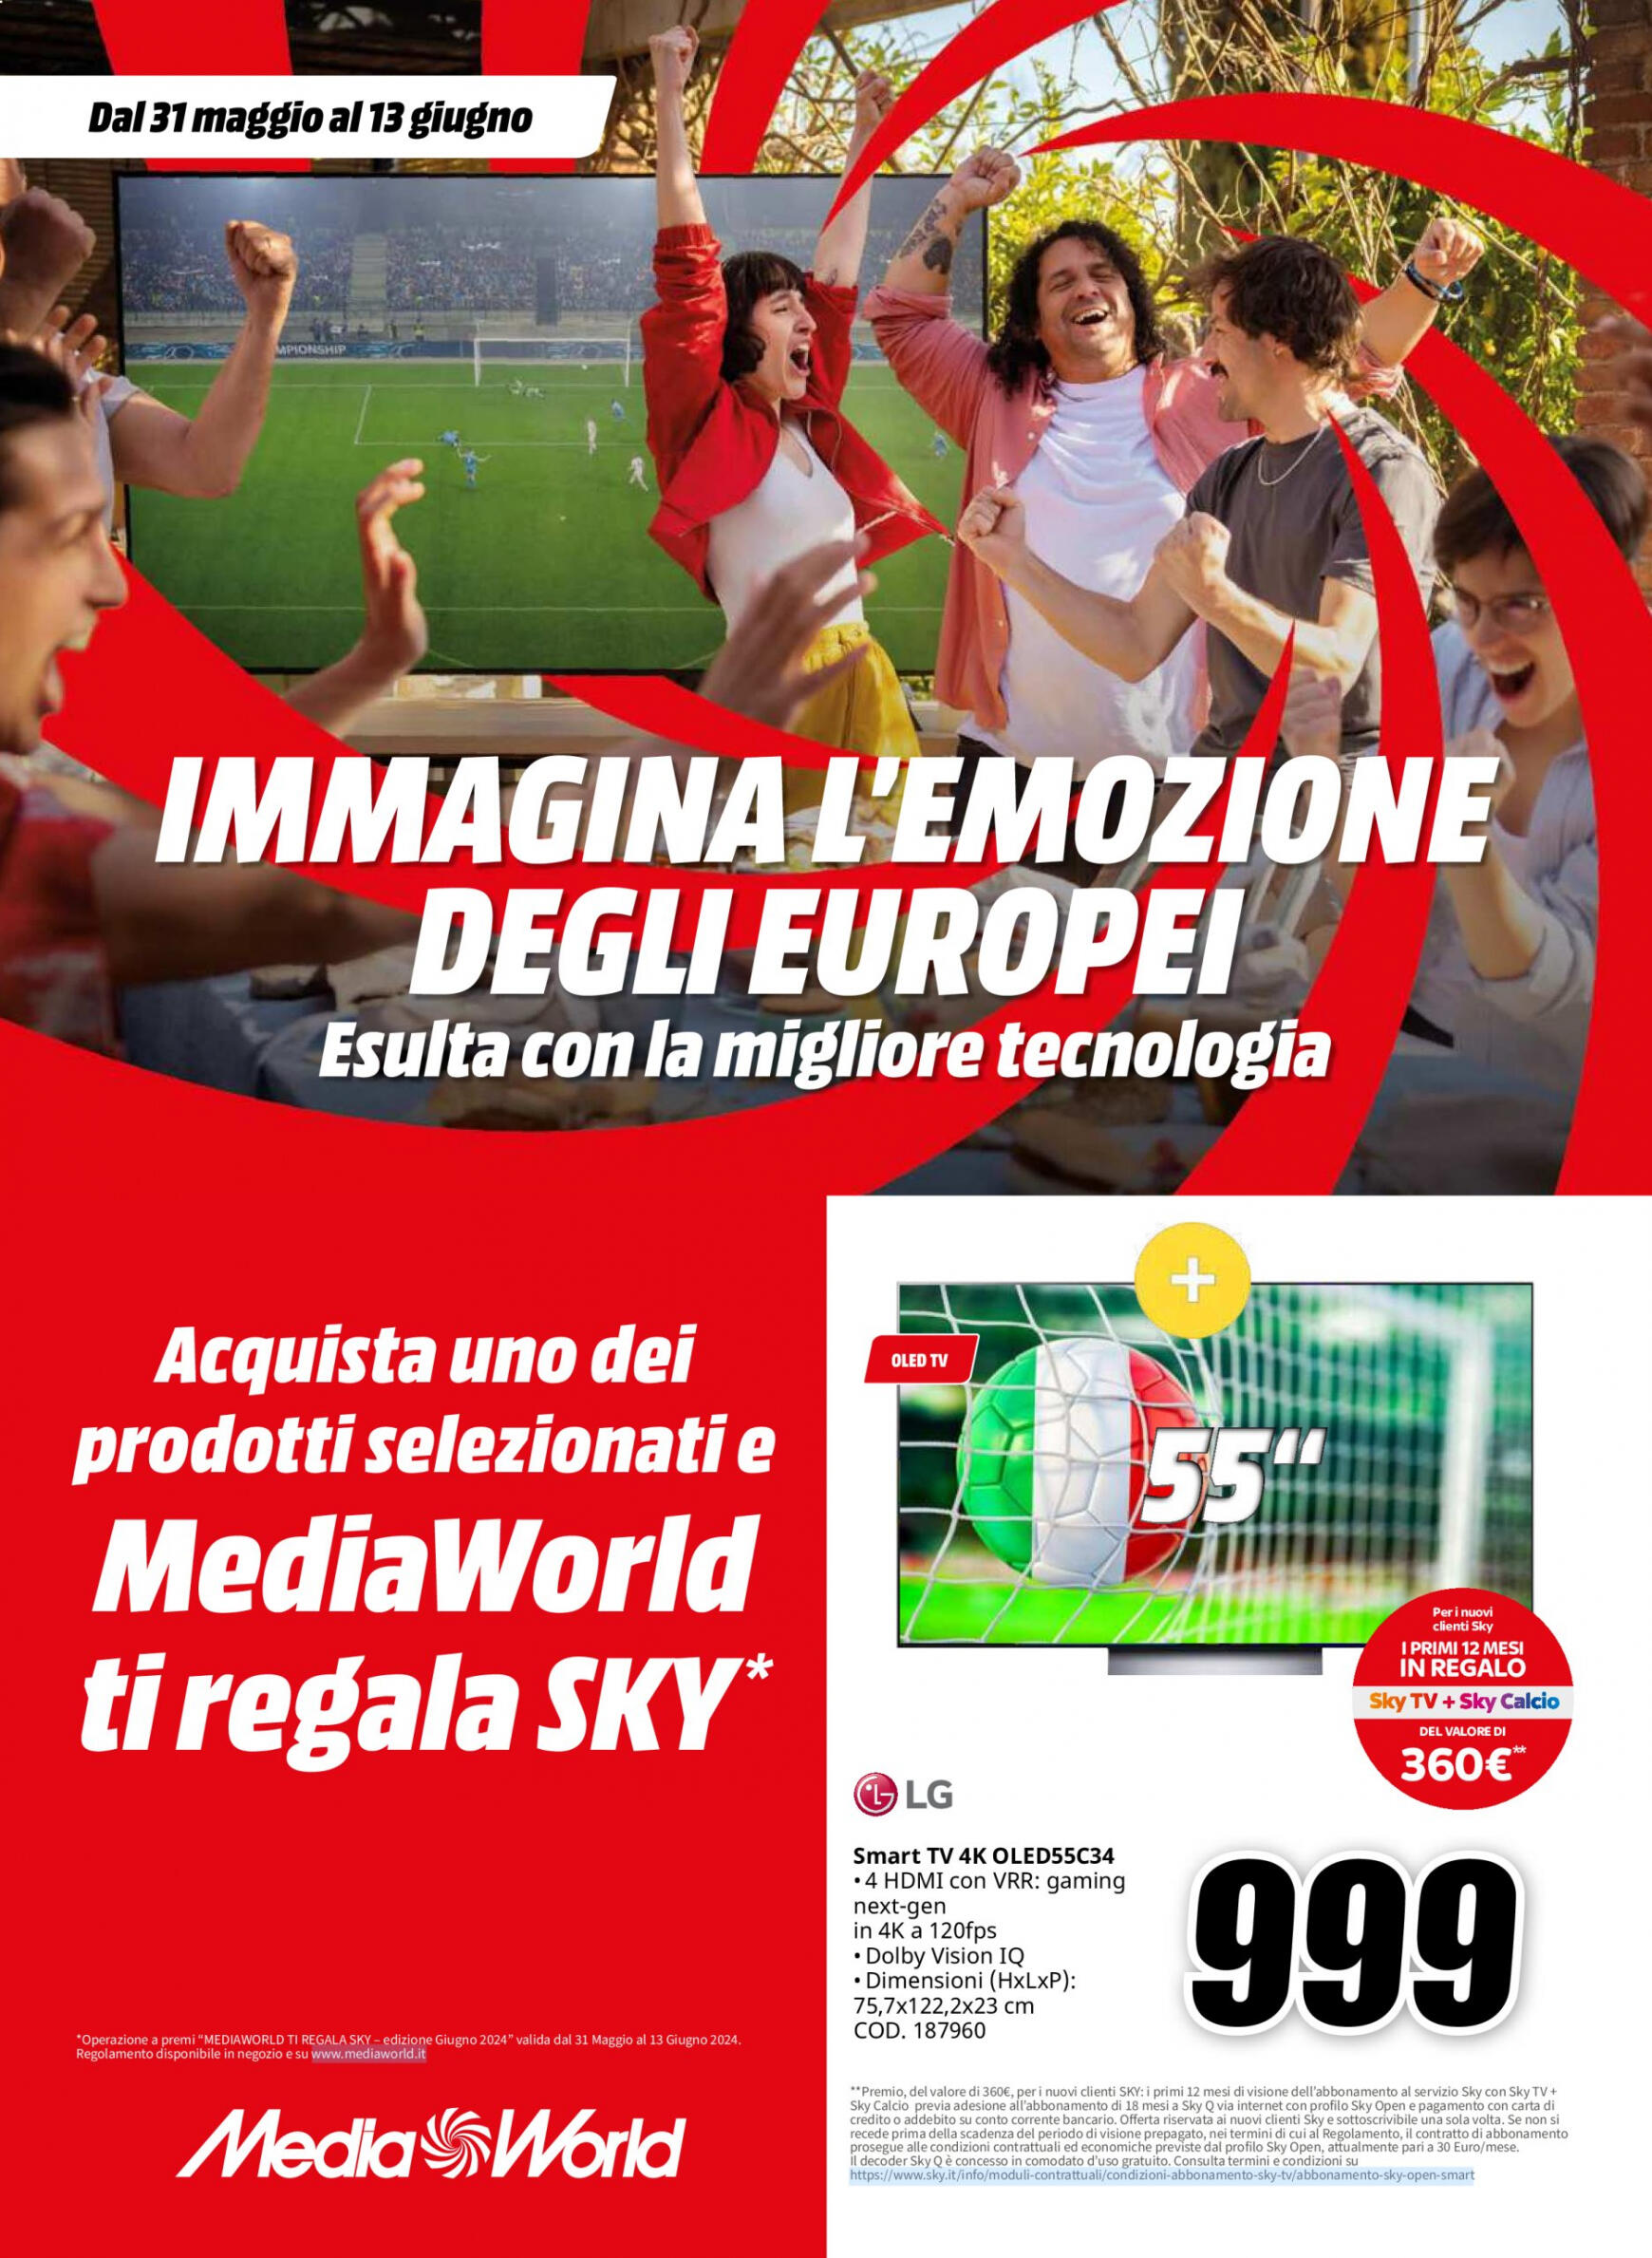 mediaworld - Nuovo volantino Mediaworld 31.05. - 13.06.